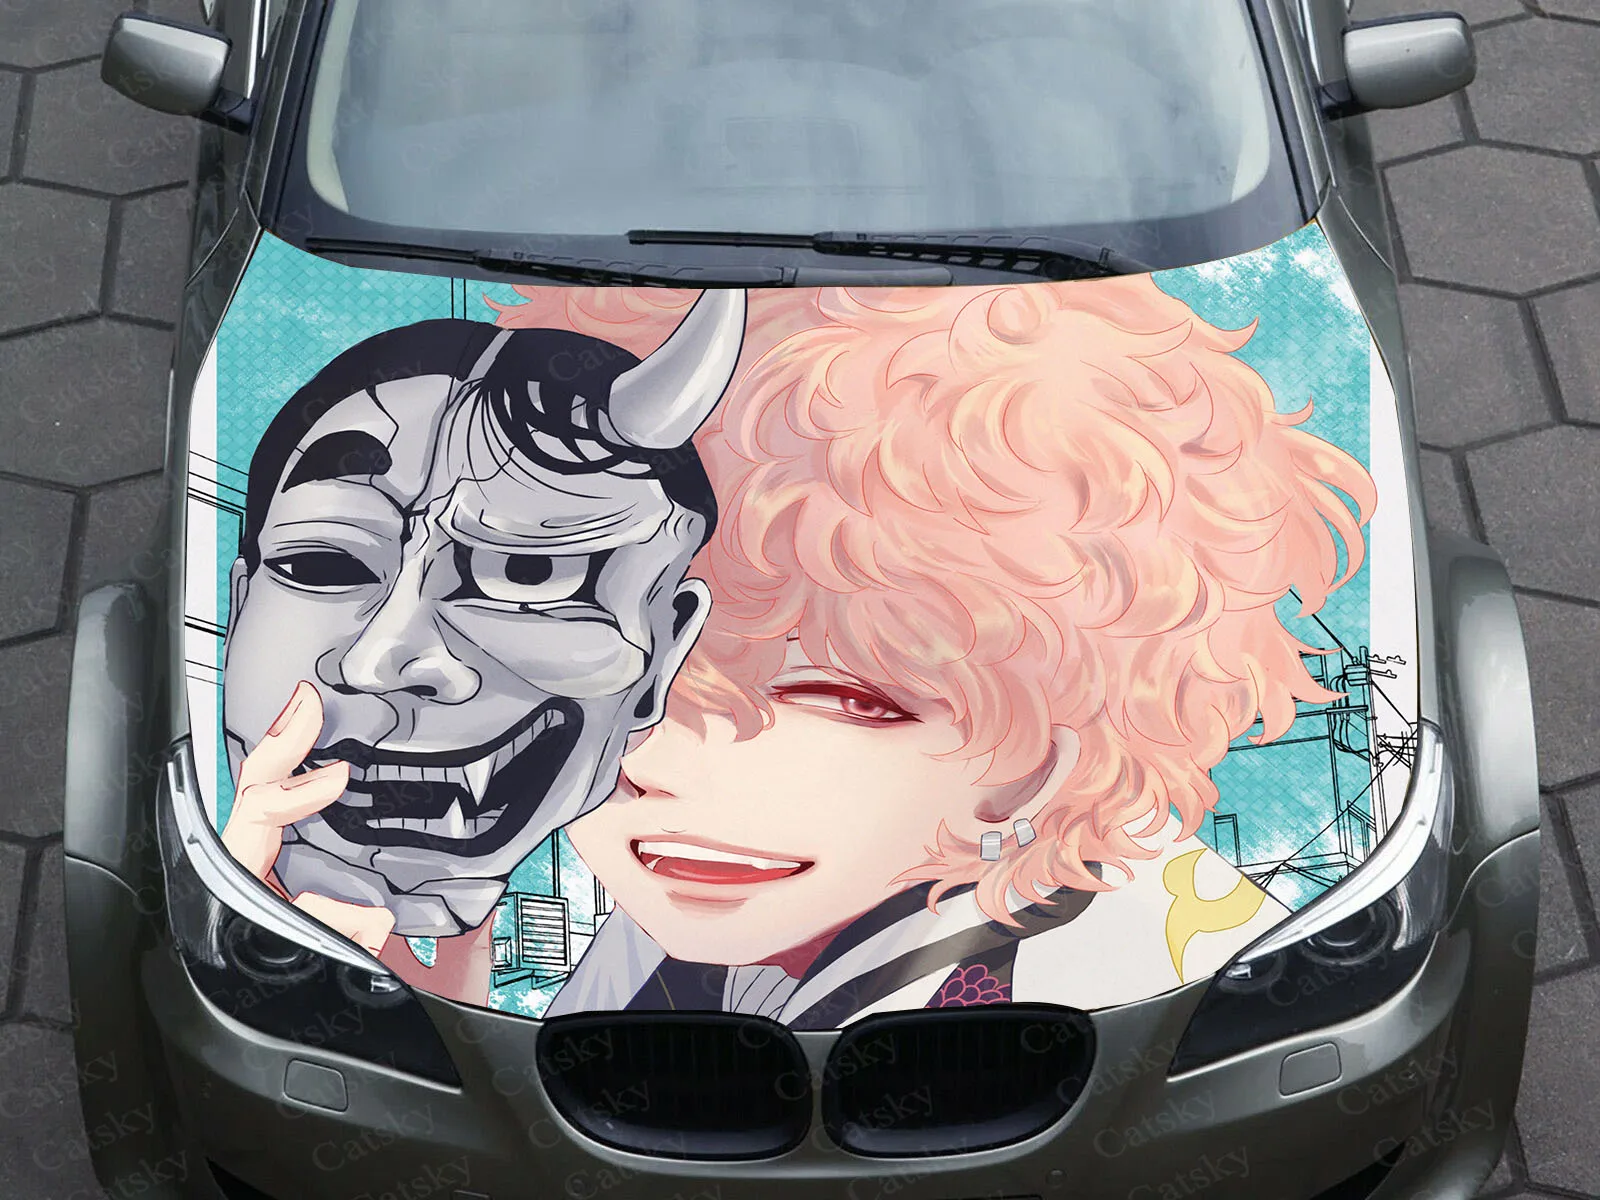 

Автомобильная виниловая наклейка с рисунком «Токийский призрак»